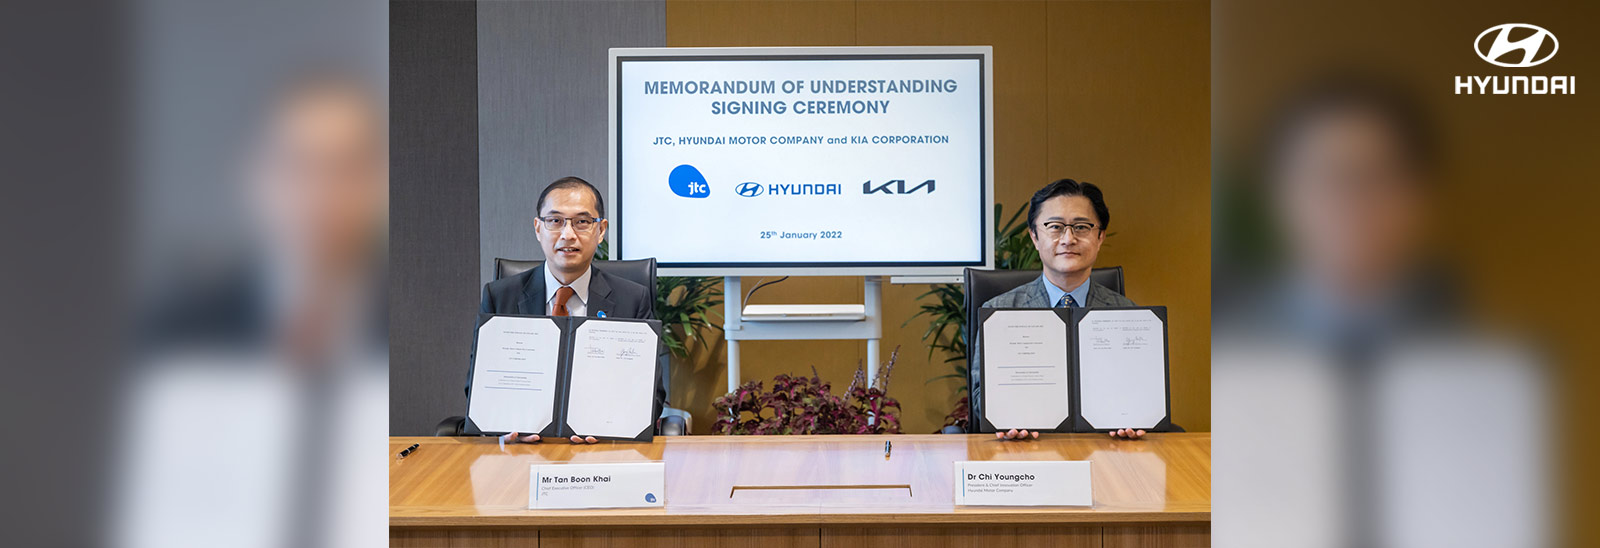 JTC y Hyundai Motor Group anunciaron que firmaron un Memorando de Entendimiento para desarrollar en conjunto opciones de movilidad optimizadas para los parques industriales y comerciales de próxima generación de Singapur.